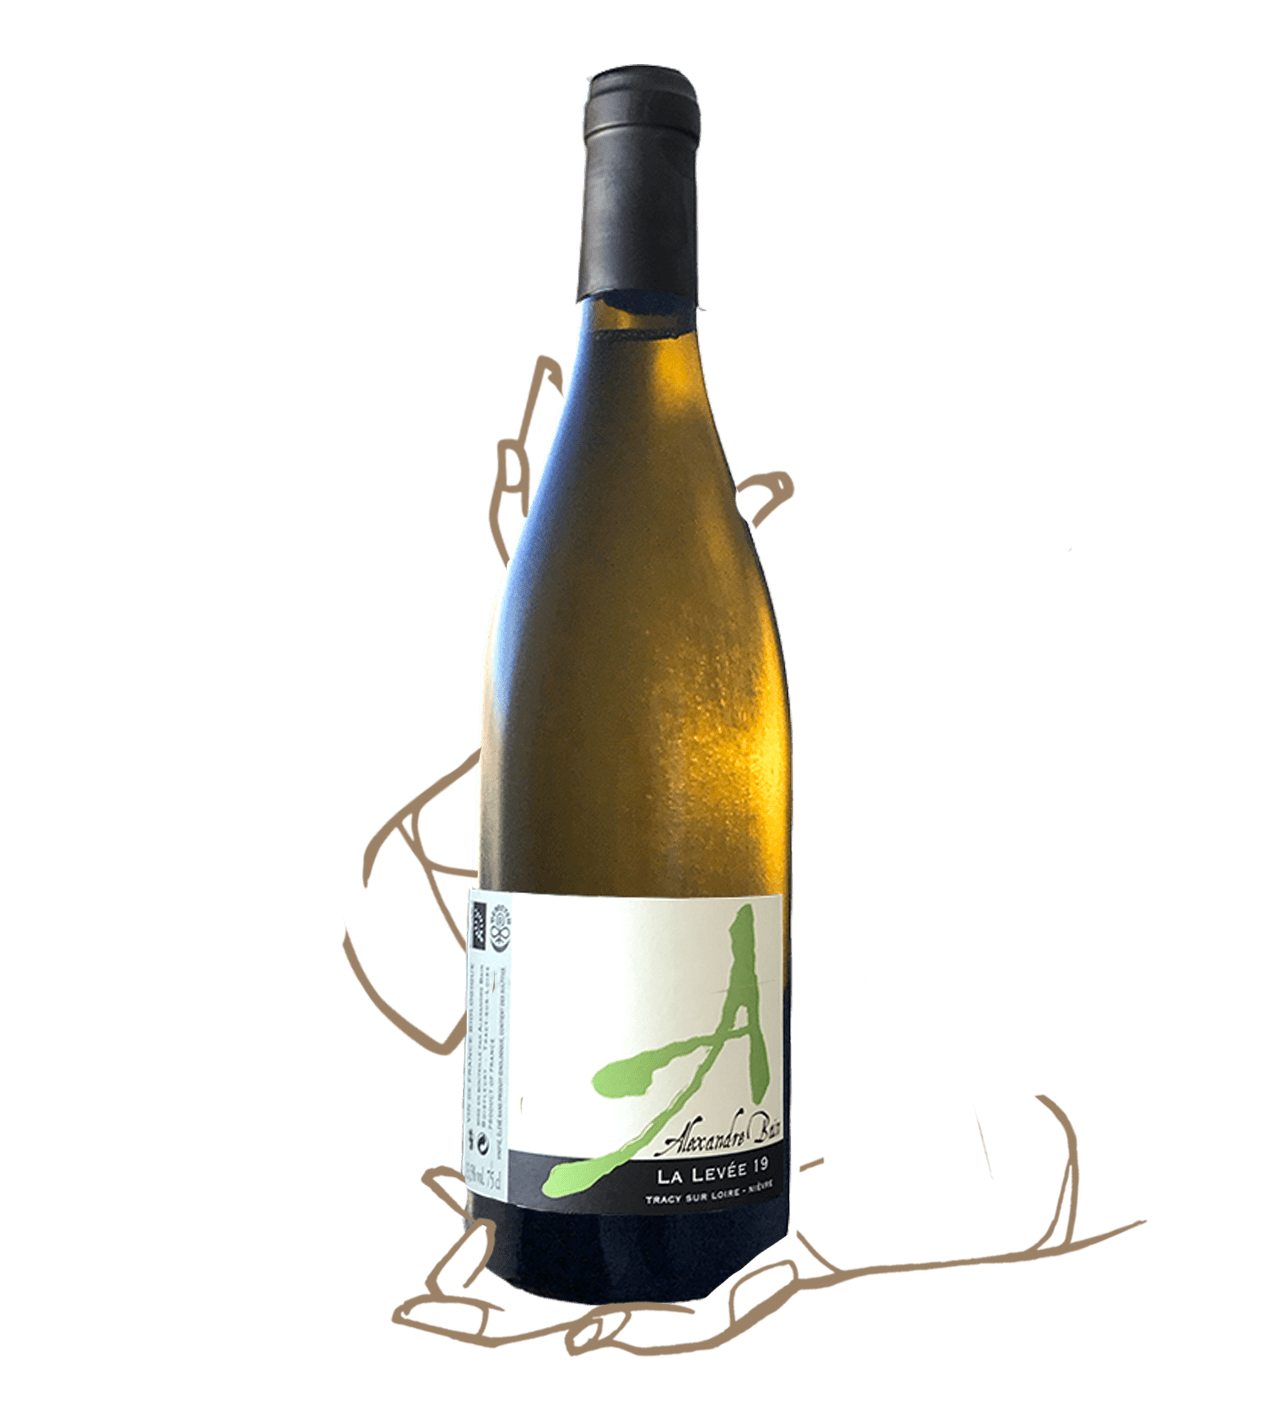 La levée 2019 d'Alexandre Bain, un vin naturel de Loire